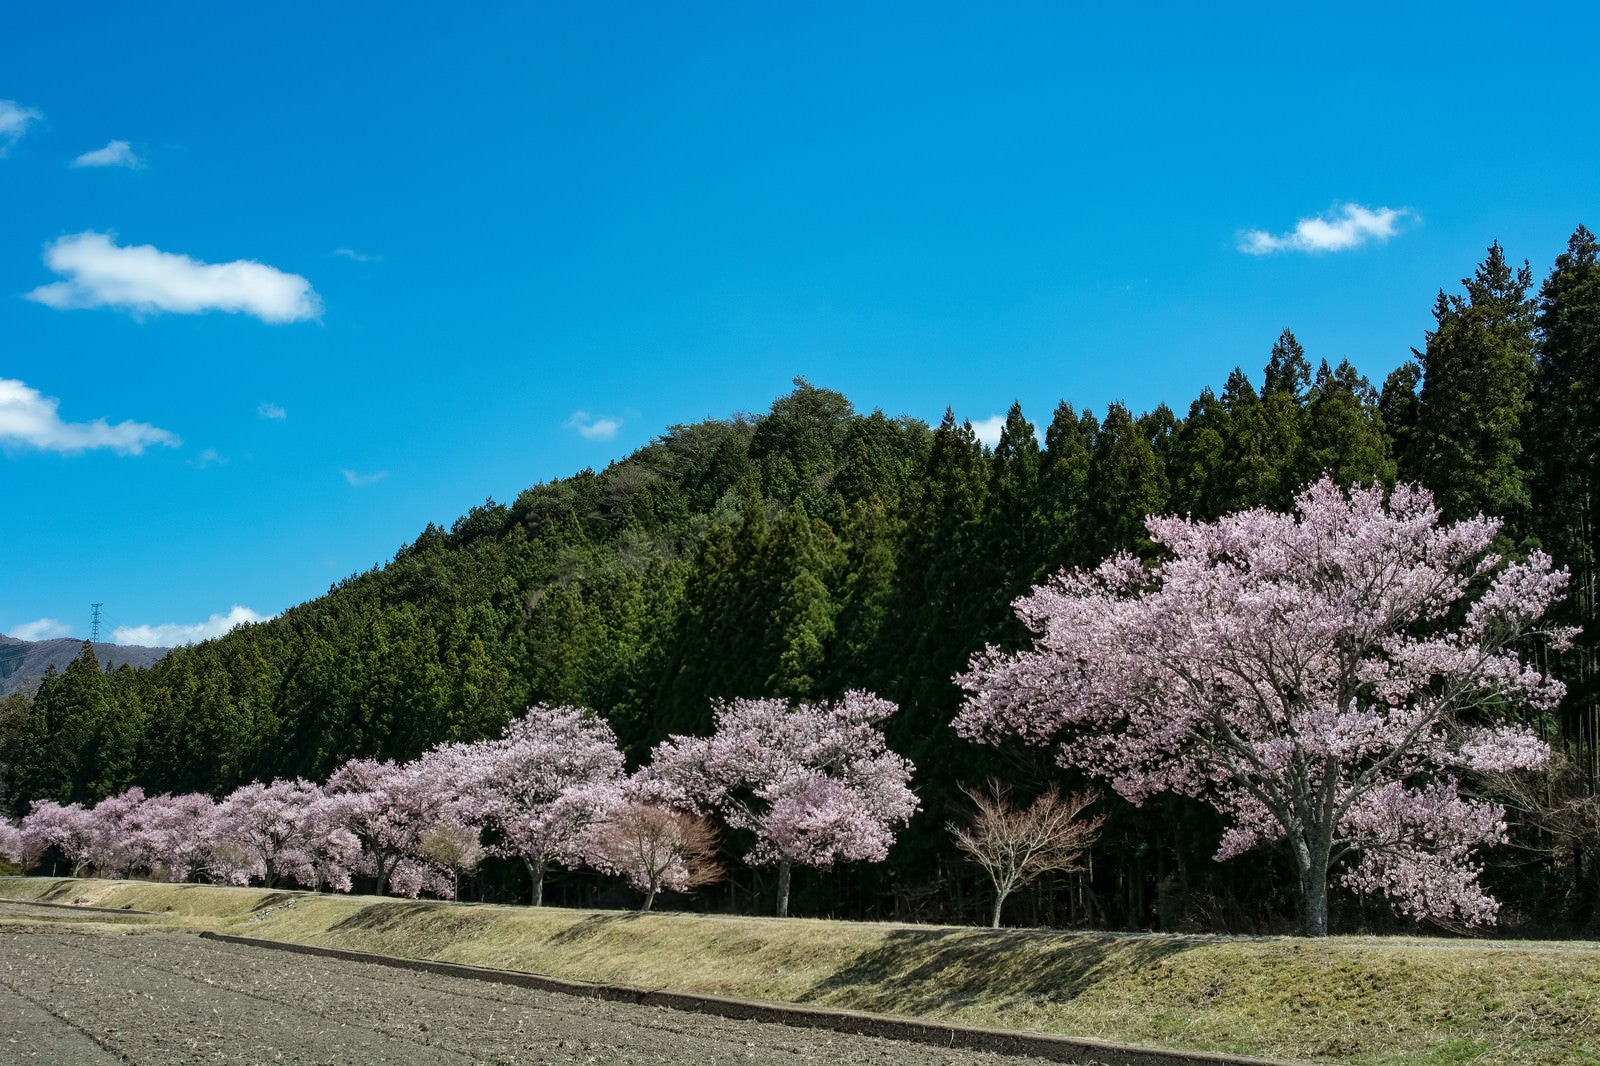 「青空に映える満開の桜並木」の写真